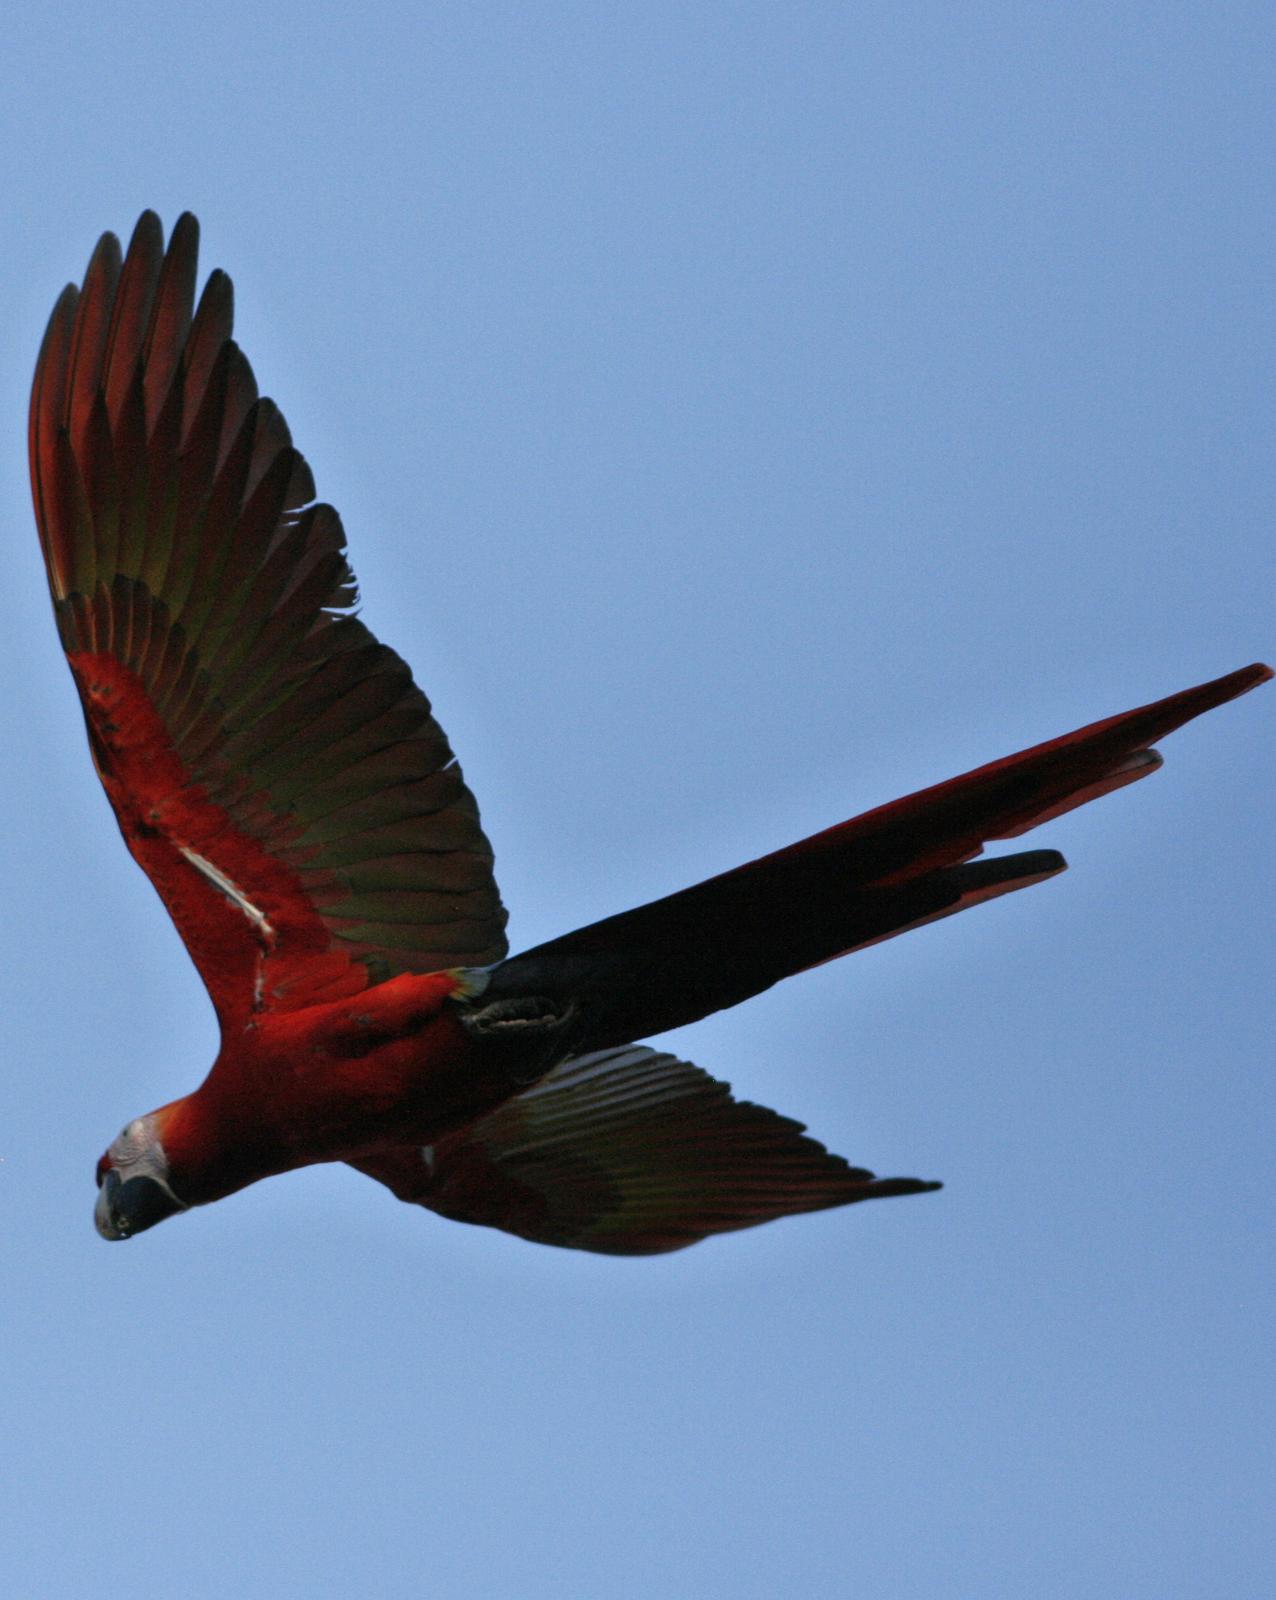 Scarlet Macaw Photo by Oscar Johnson